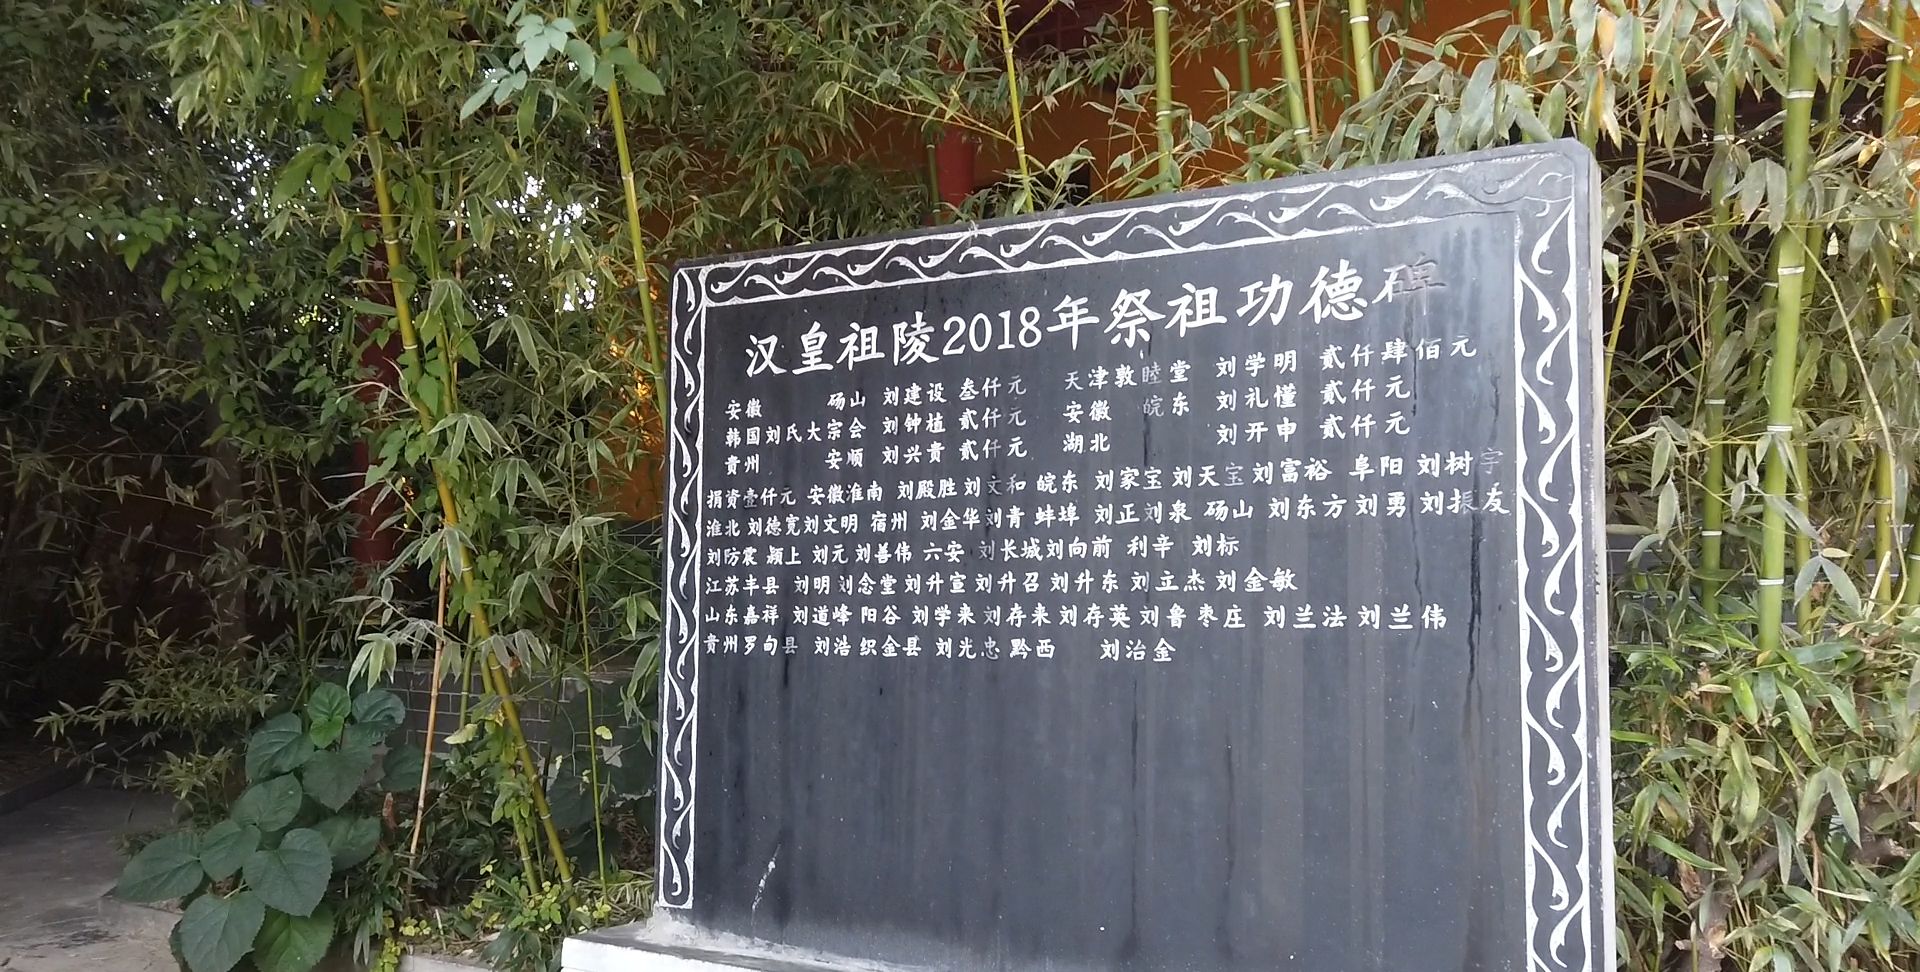 1 / 9 丰县是汉高祖刘邦的老家,被史家称为汉高故里,俗称汉皇故里,这